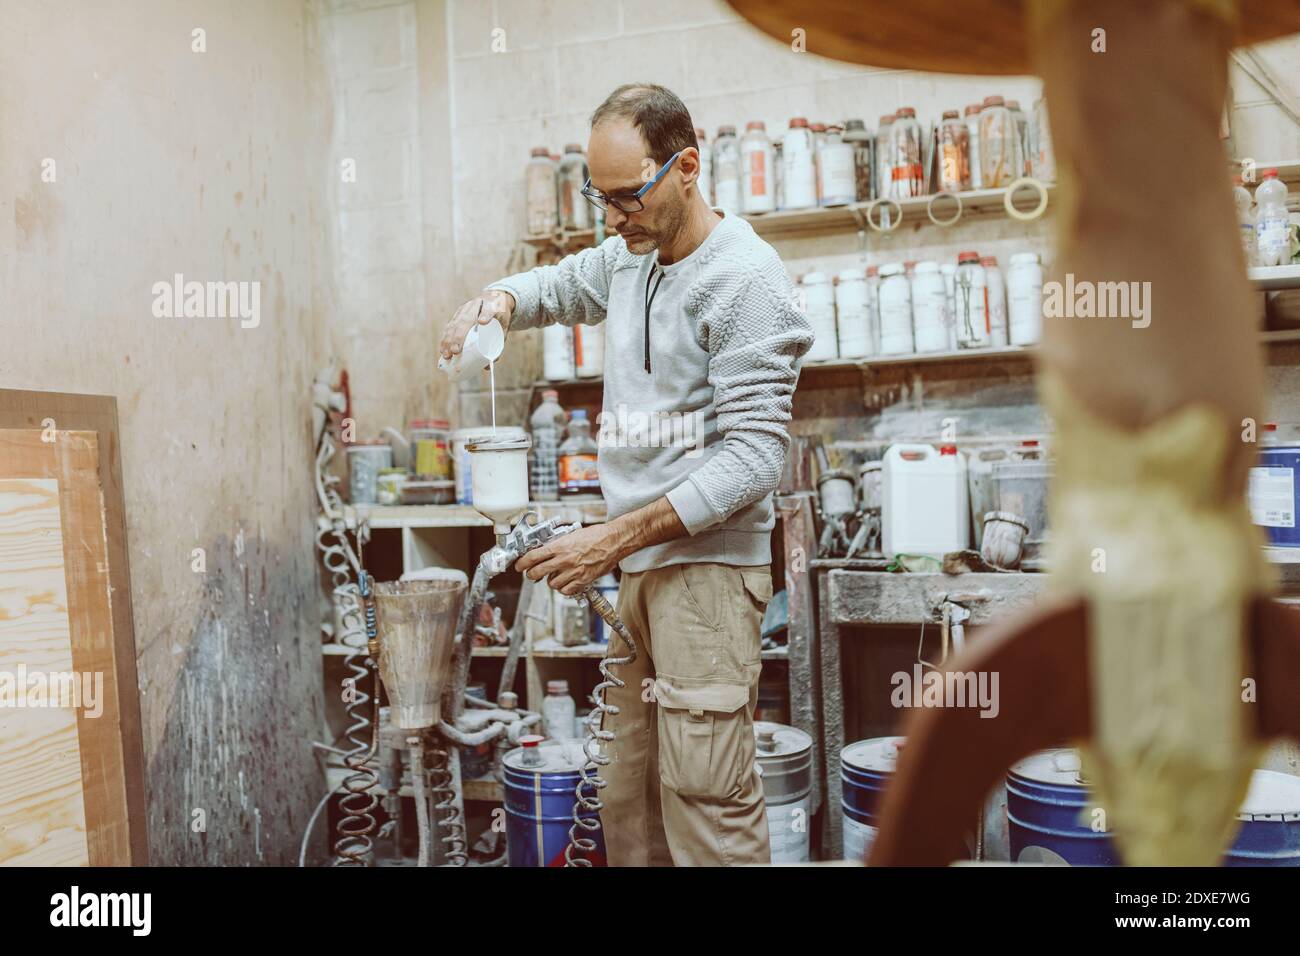 Manueller Arbeiter, der im Stehen weiße Farbe in die Spritzpistole setzt In der Werkstatt Stockfoto